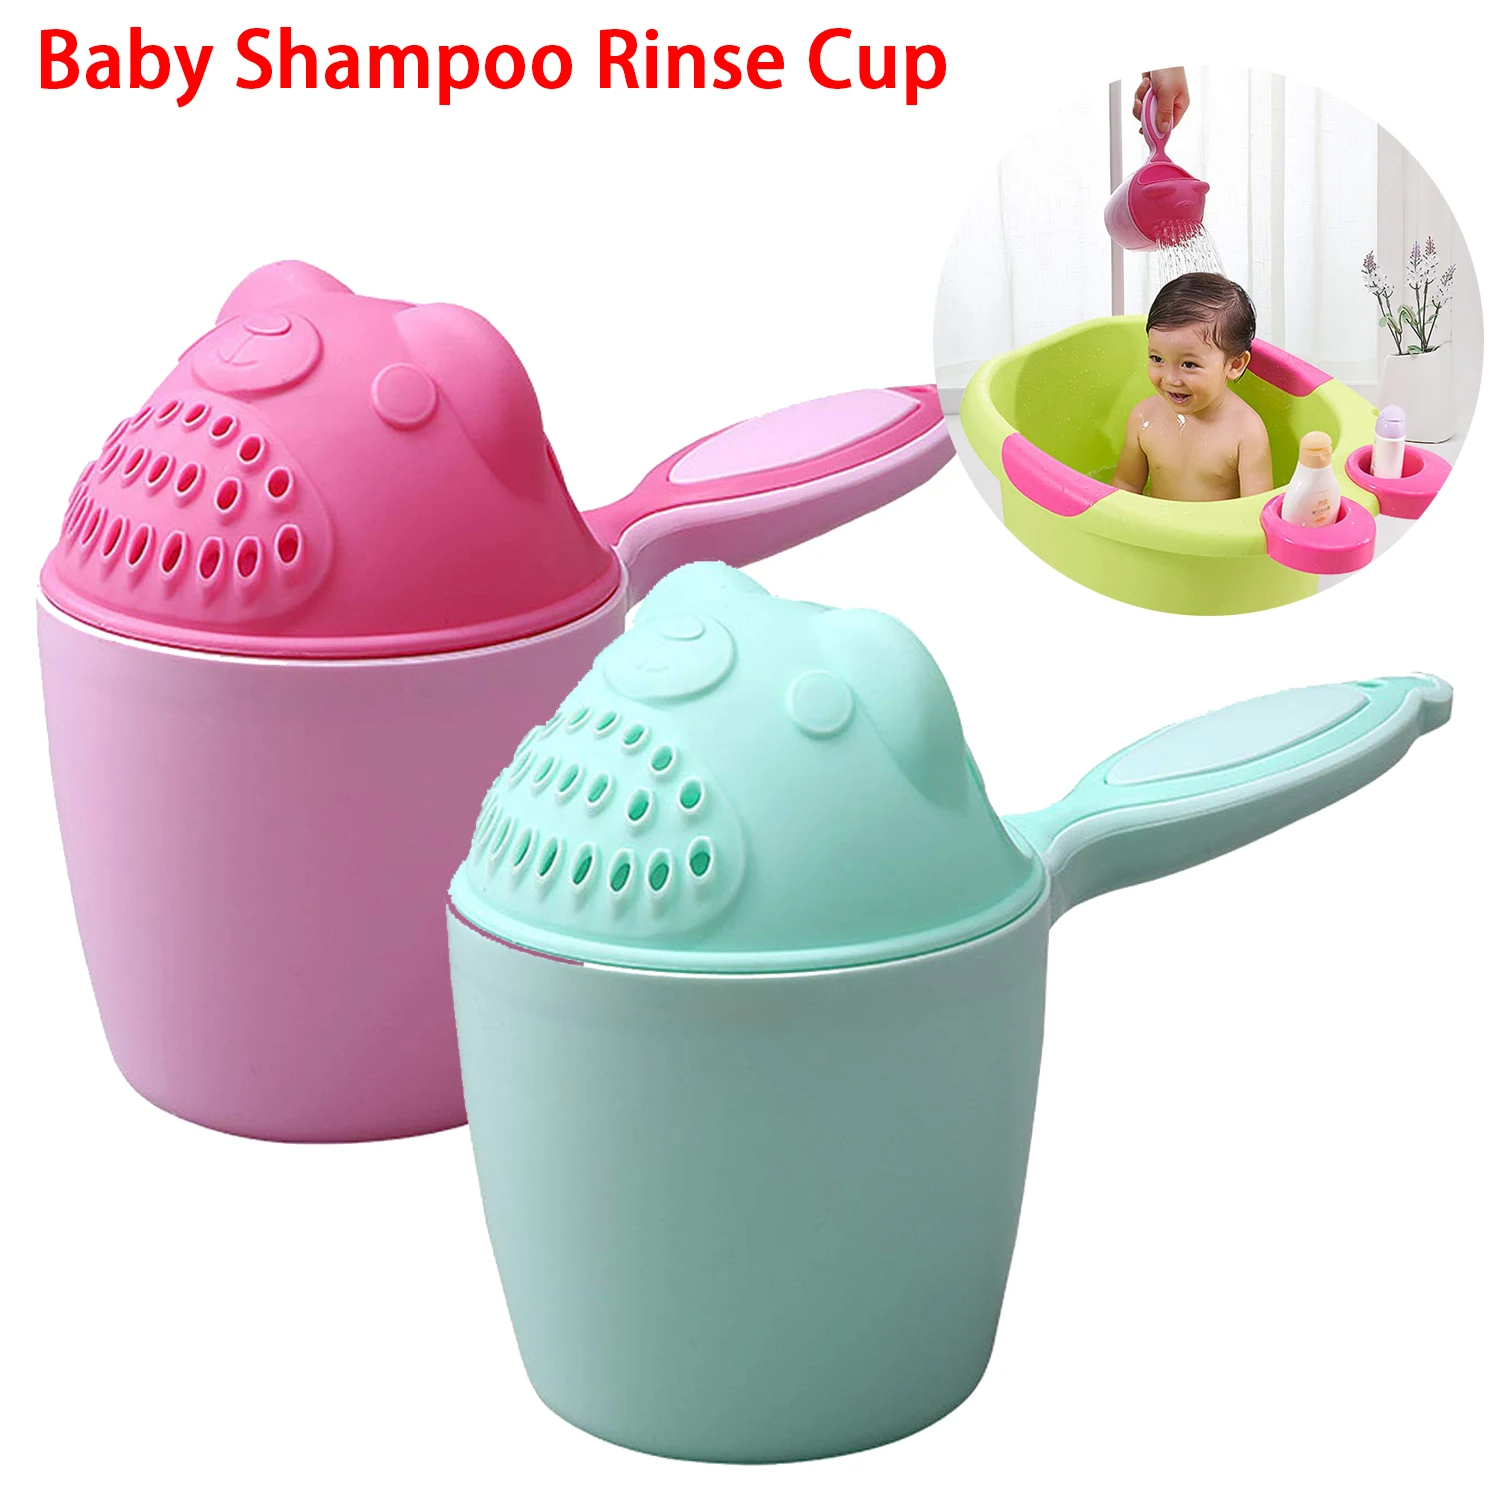 Baby Shampoo Rinse Cup Kinder Bad Wasserfall Rinser Kinder baden Babypartylöffel Kinder waschen Haar Tasse Kinder Bad Werkzeug Werkzeug